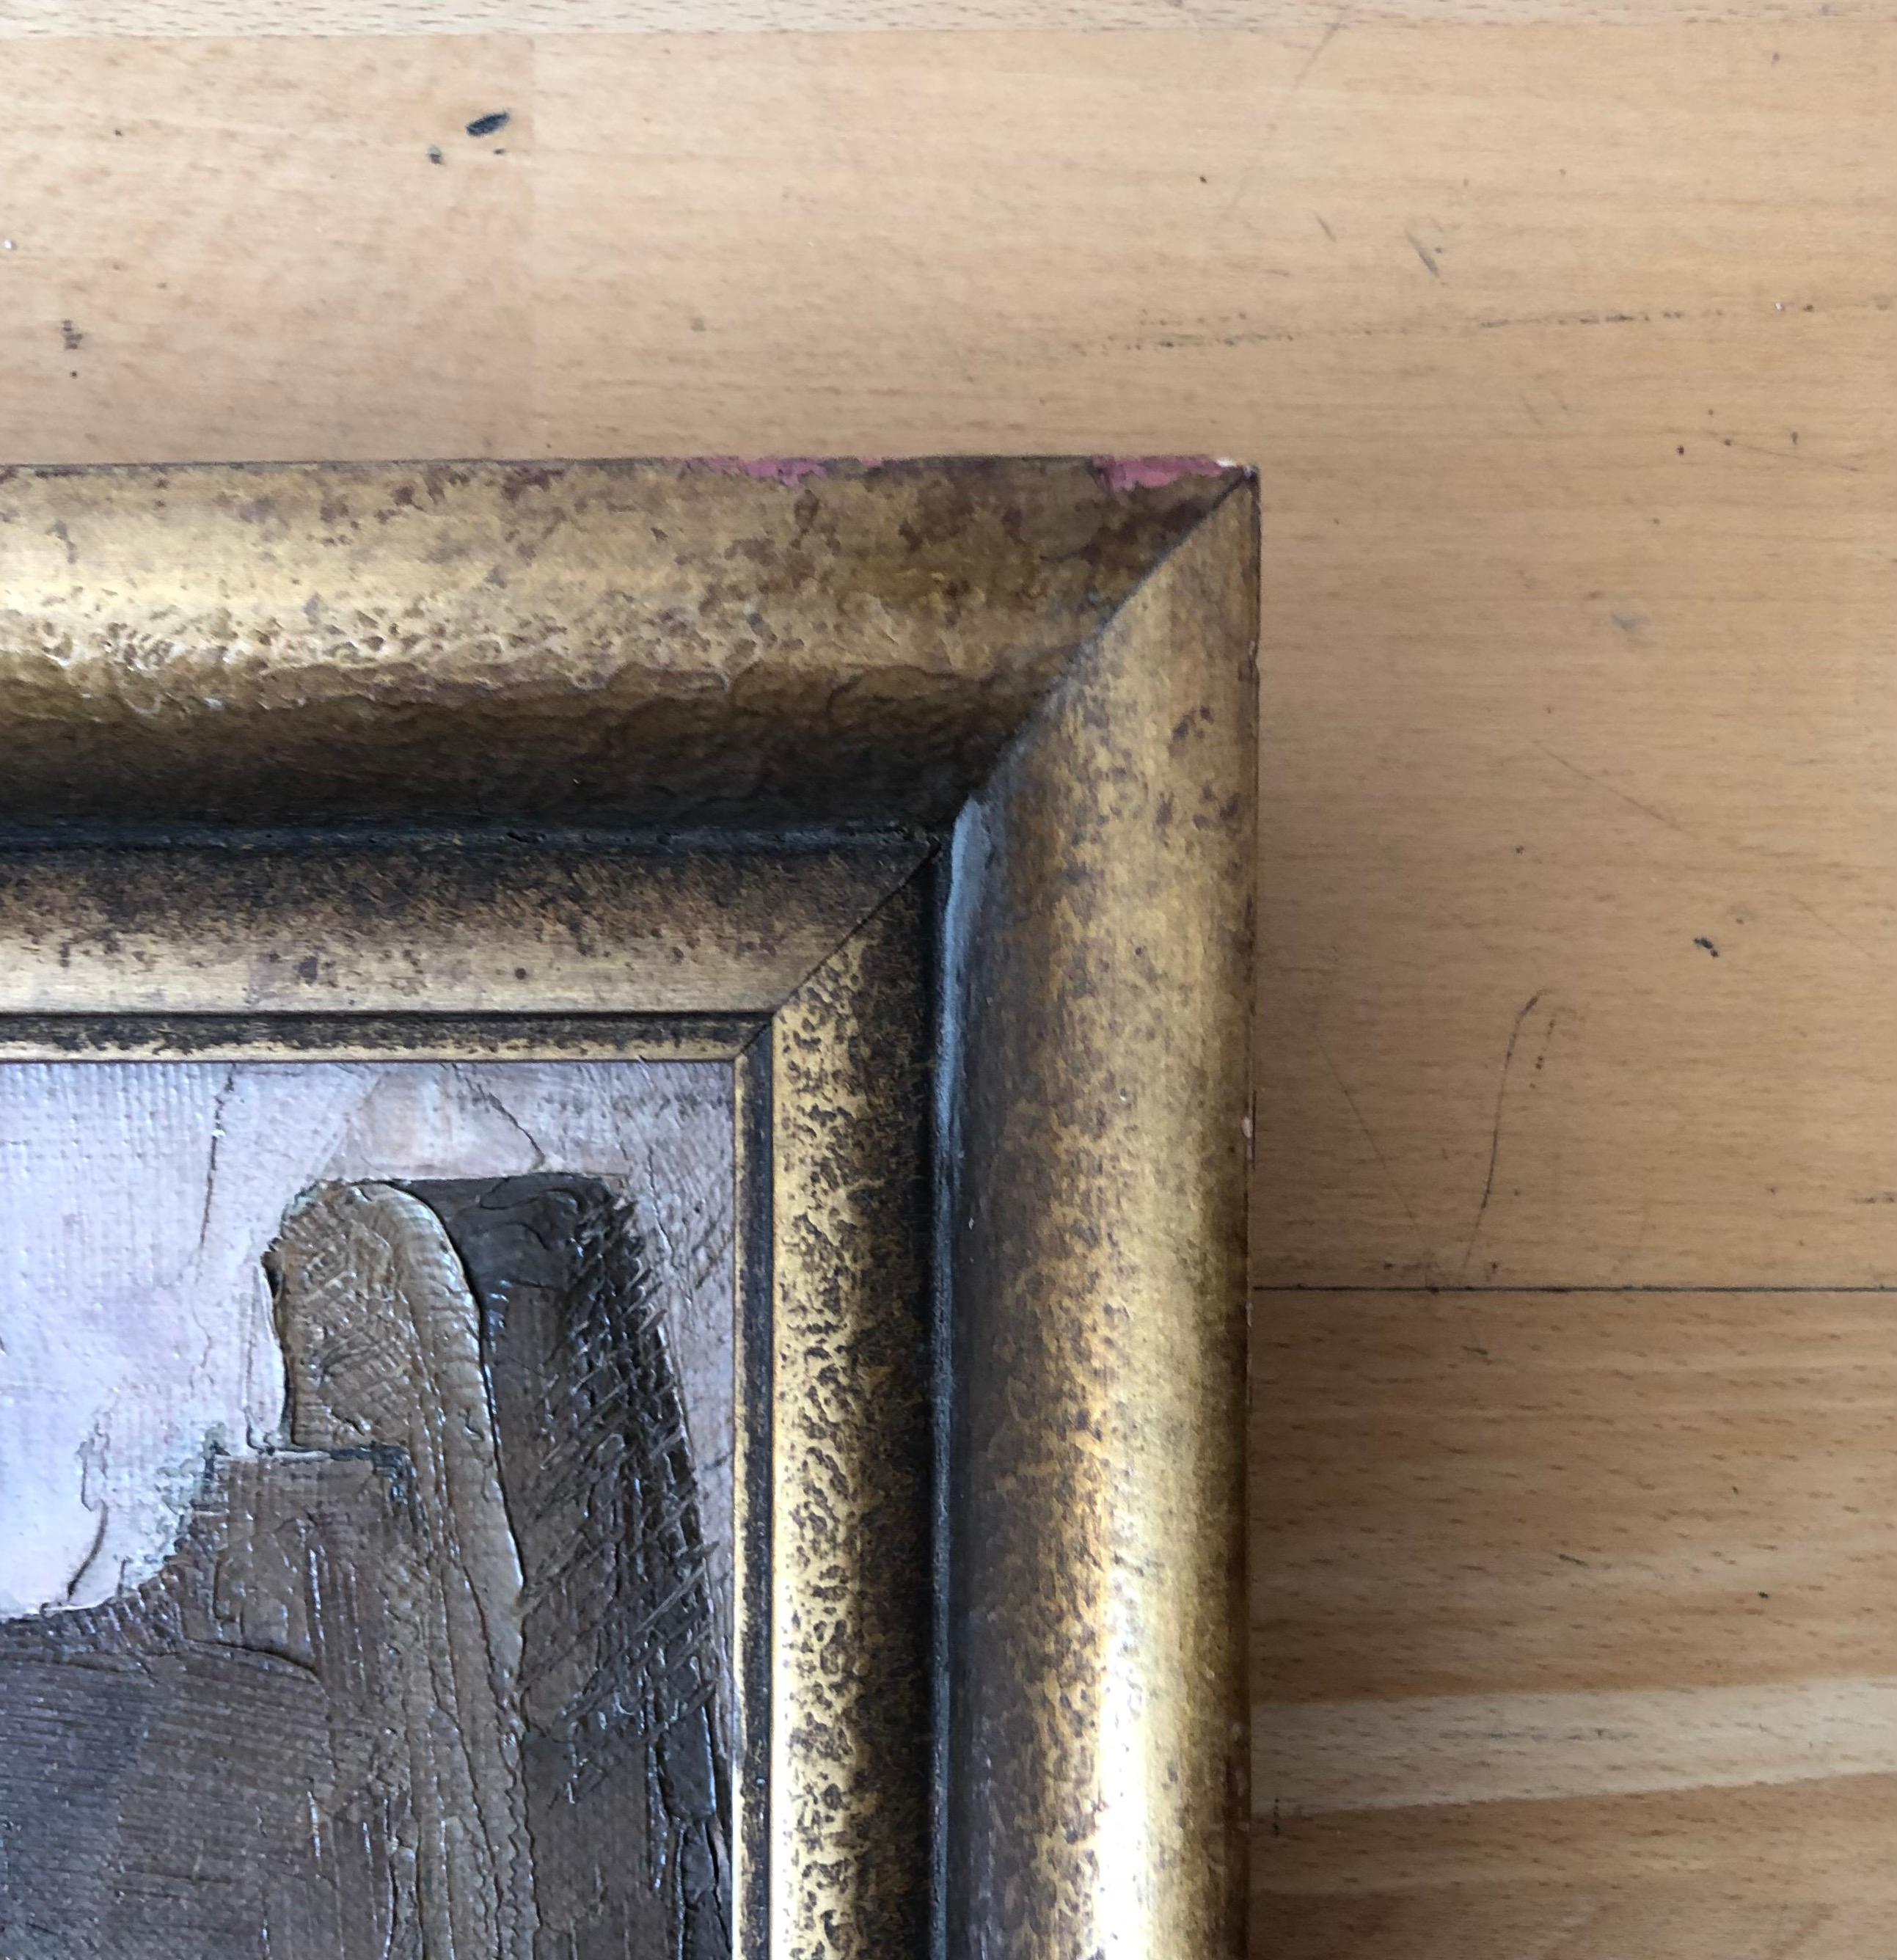 Work on canvas
Golden wooden frame
58 x 78 x 5 cm